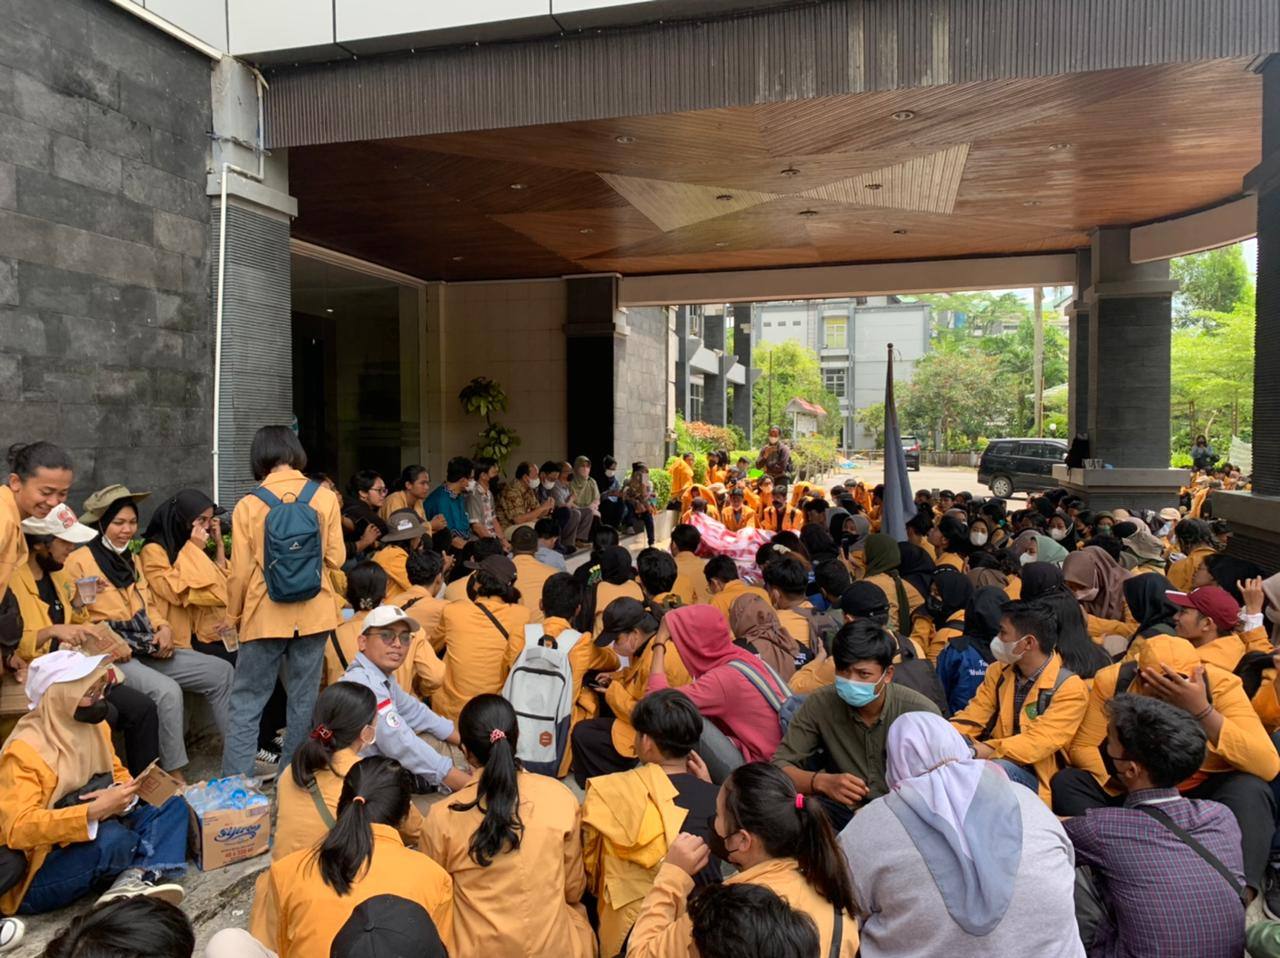 Ratusan mahasiswa Fakultas Kehutanan Unmul menggelar aksi unjuk rasa menuntut dosen dihukum atas dugaan pelecehan seksual. (LEM Sylva)